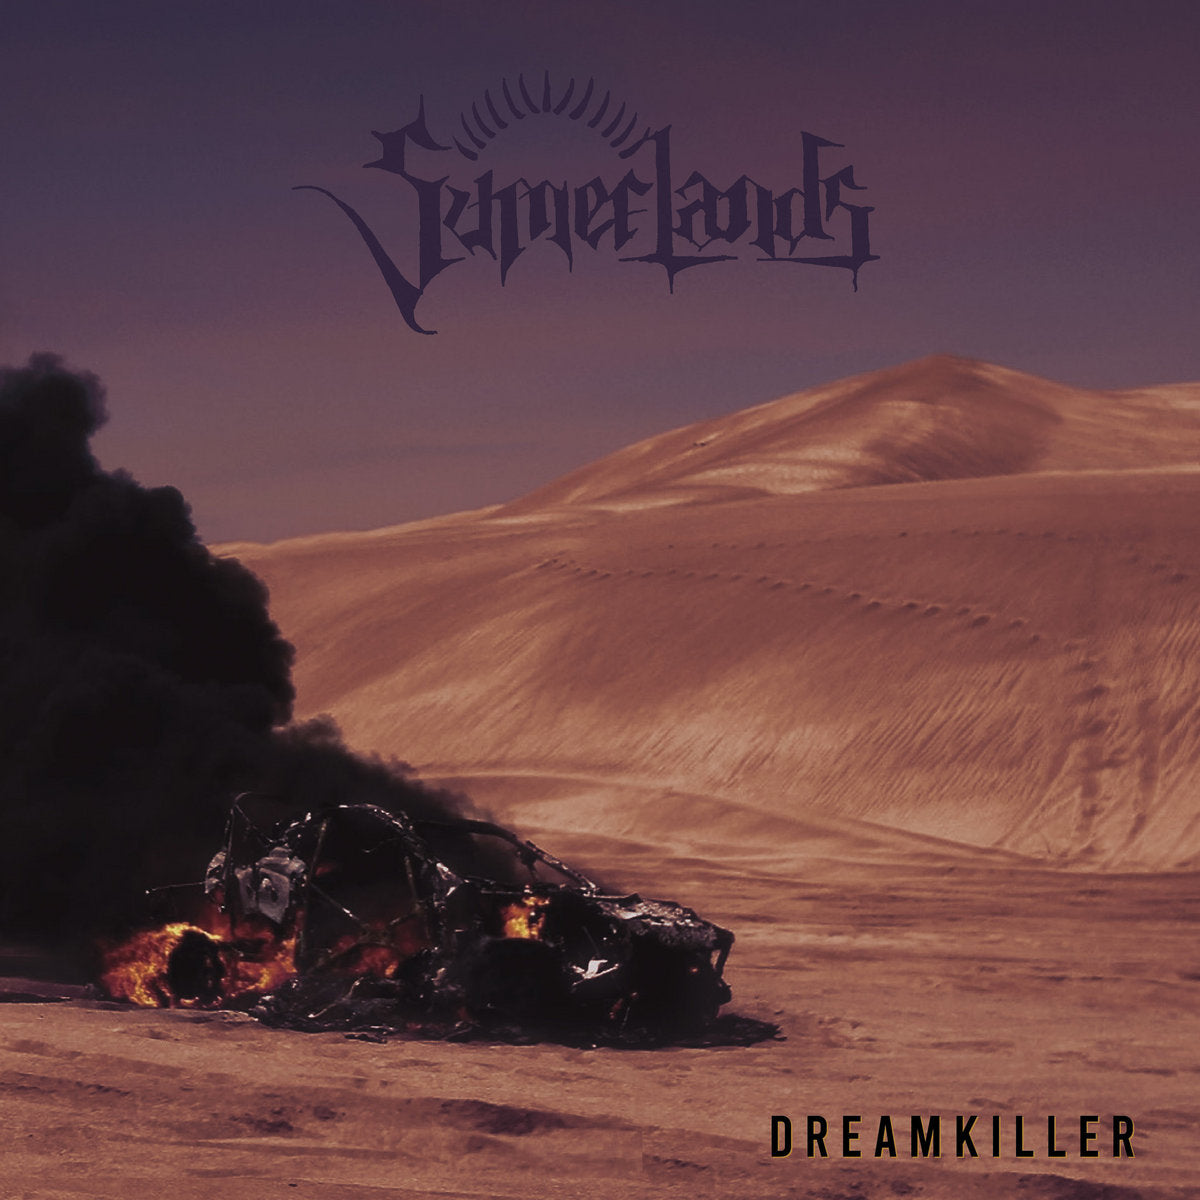 Summerlands "Dreamkiller" 12" Vinyl